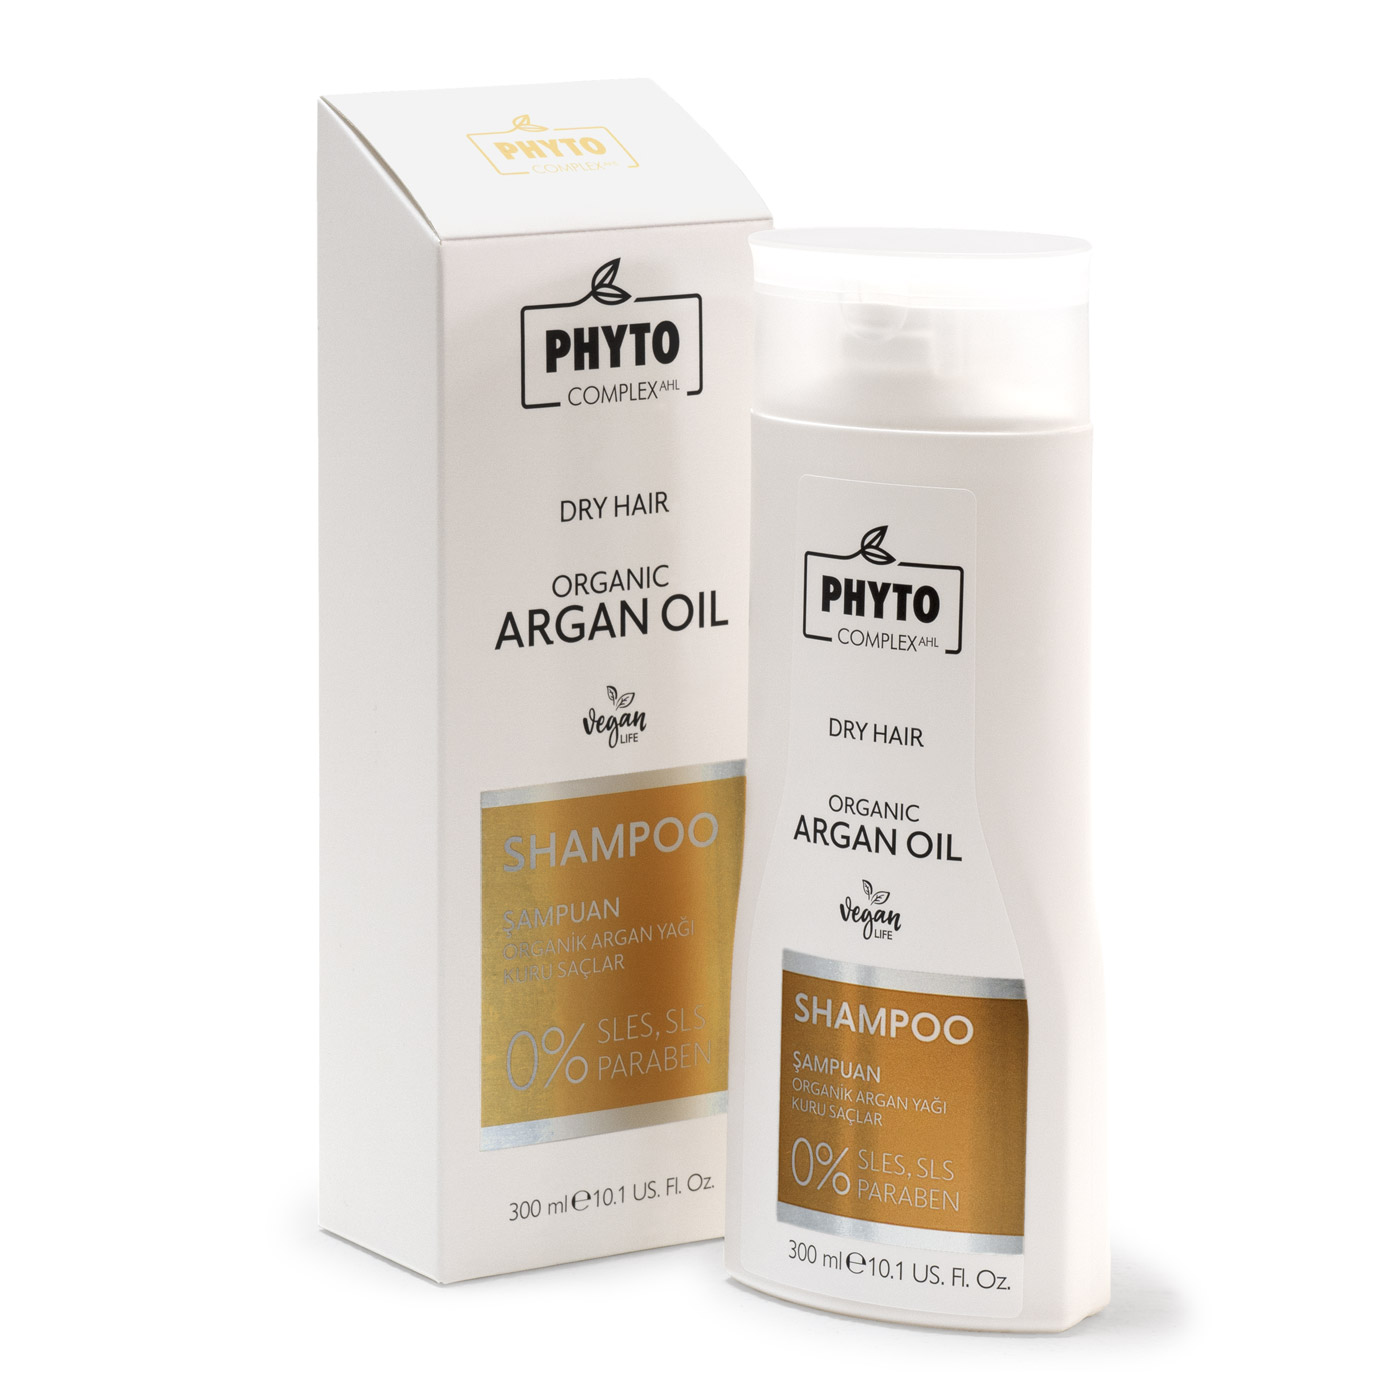 Натуральный шампунь Phytocomplex для сухих волос Organic Argan Dry Hair olje натуральный шампунь для сухих волос с экстрактом березовых почек и кератином 450 0